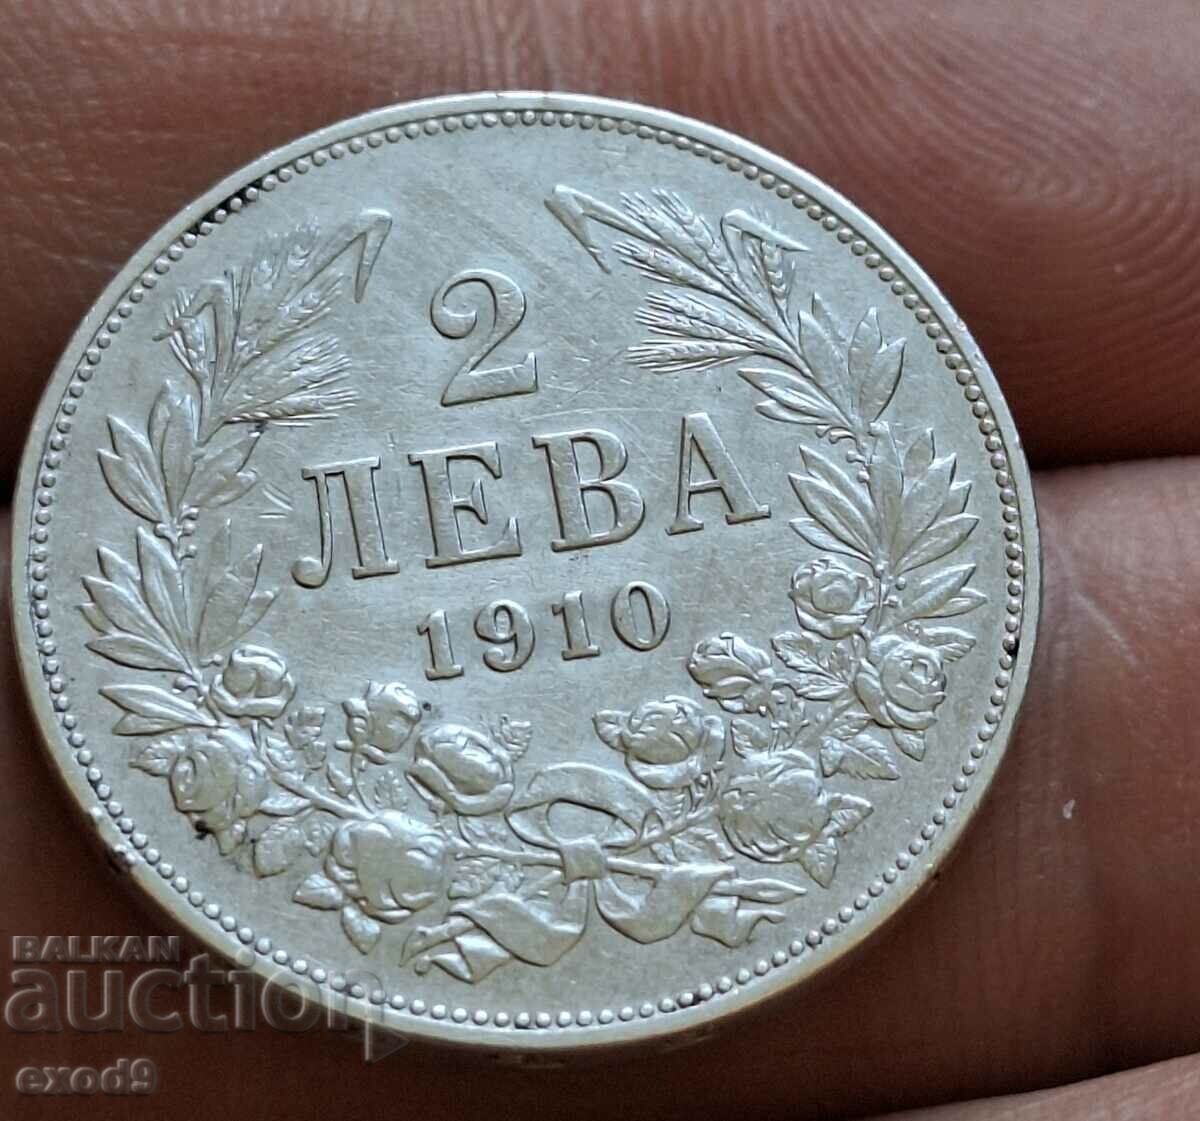 Silver, coin 2 leva 1910